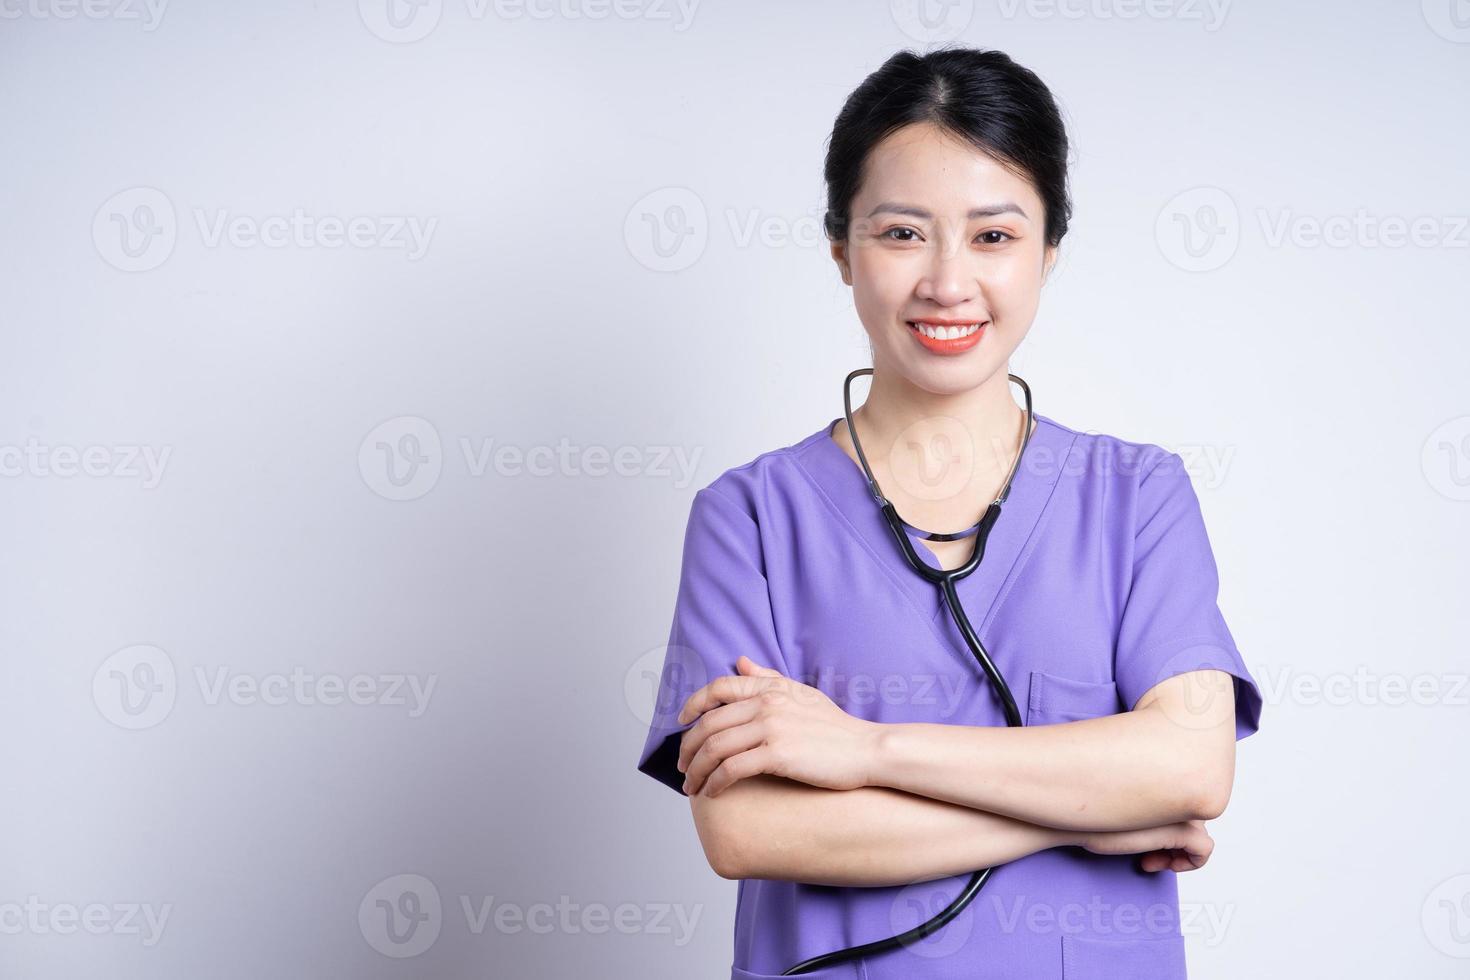 retrato de jovem enfermeira asiática em fundo branco foto